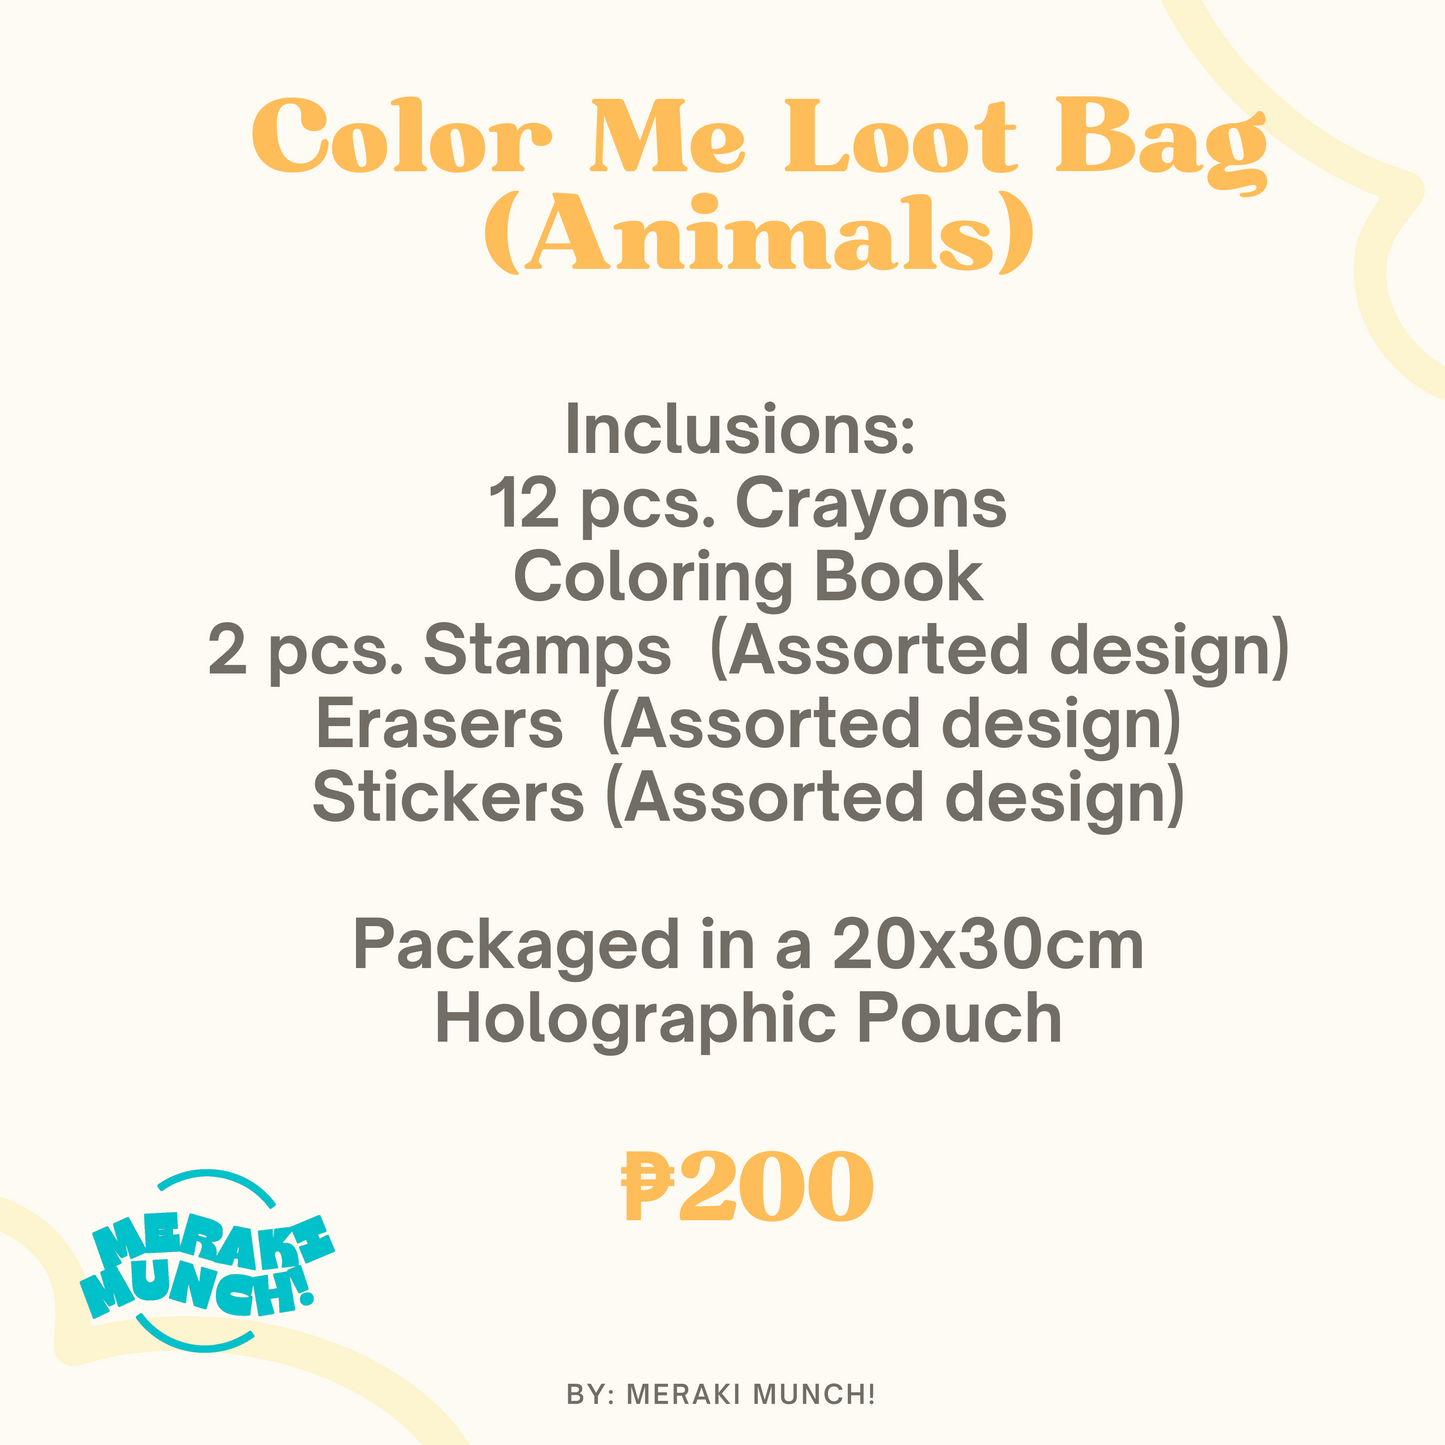 Color Me Loot Bag